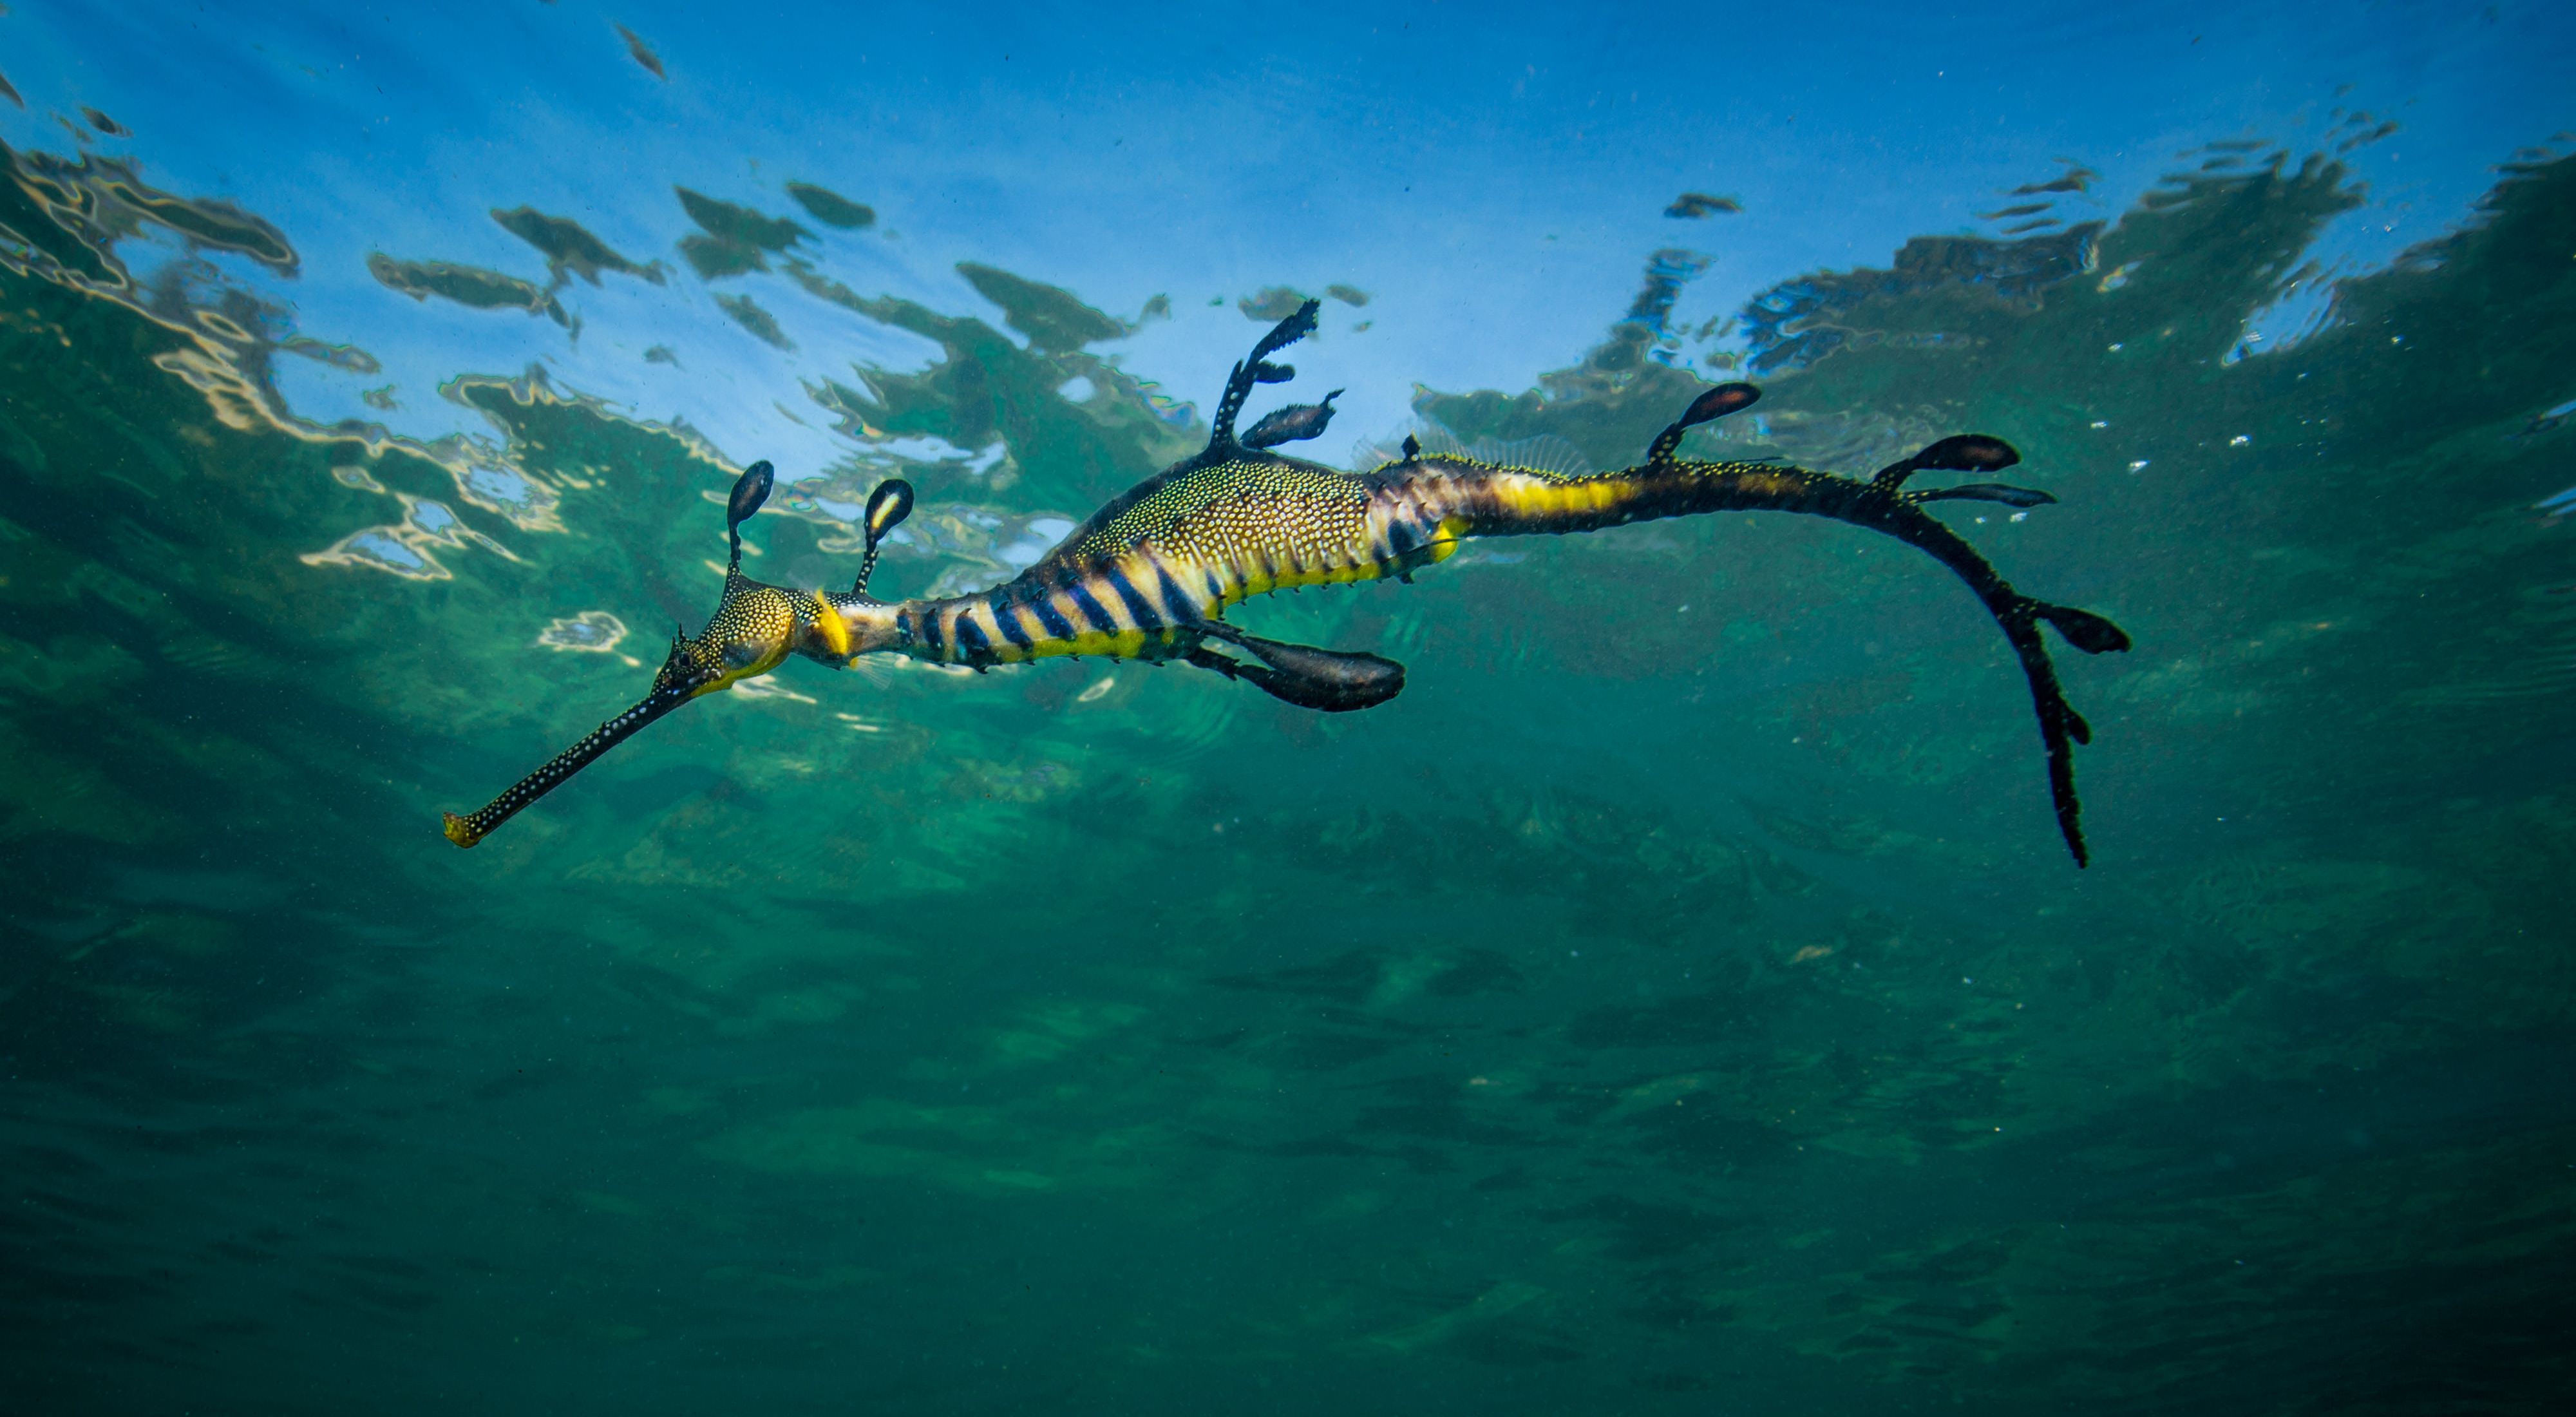 Meet the creatures in Port Phillip Bay